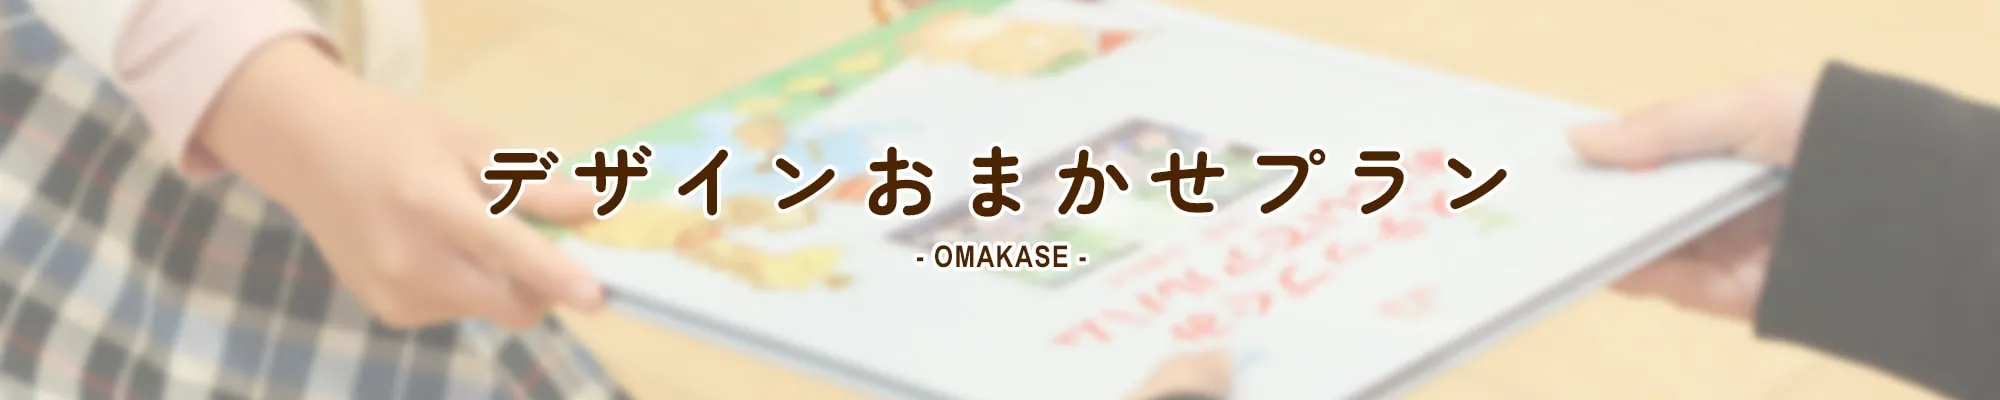 デザインおまかせプラン OMAKASE